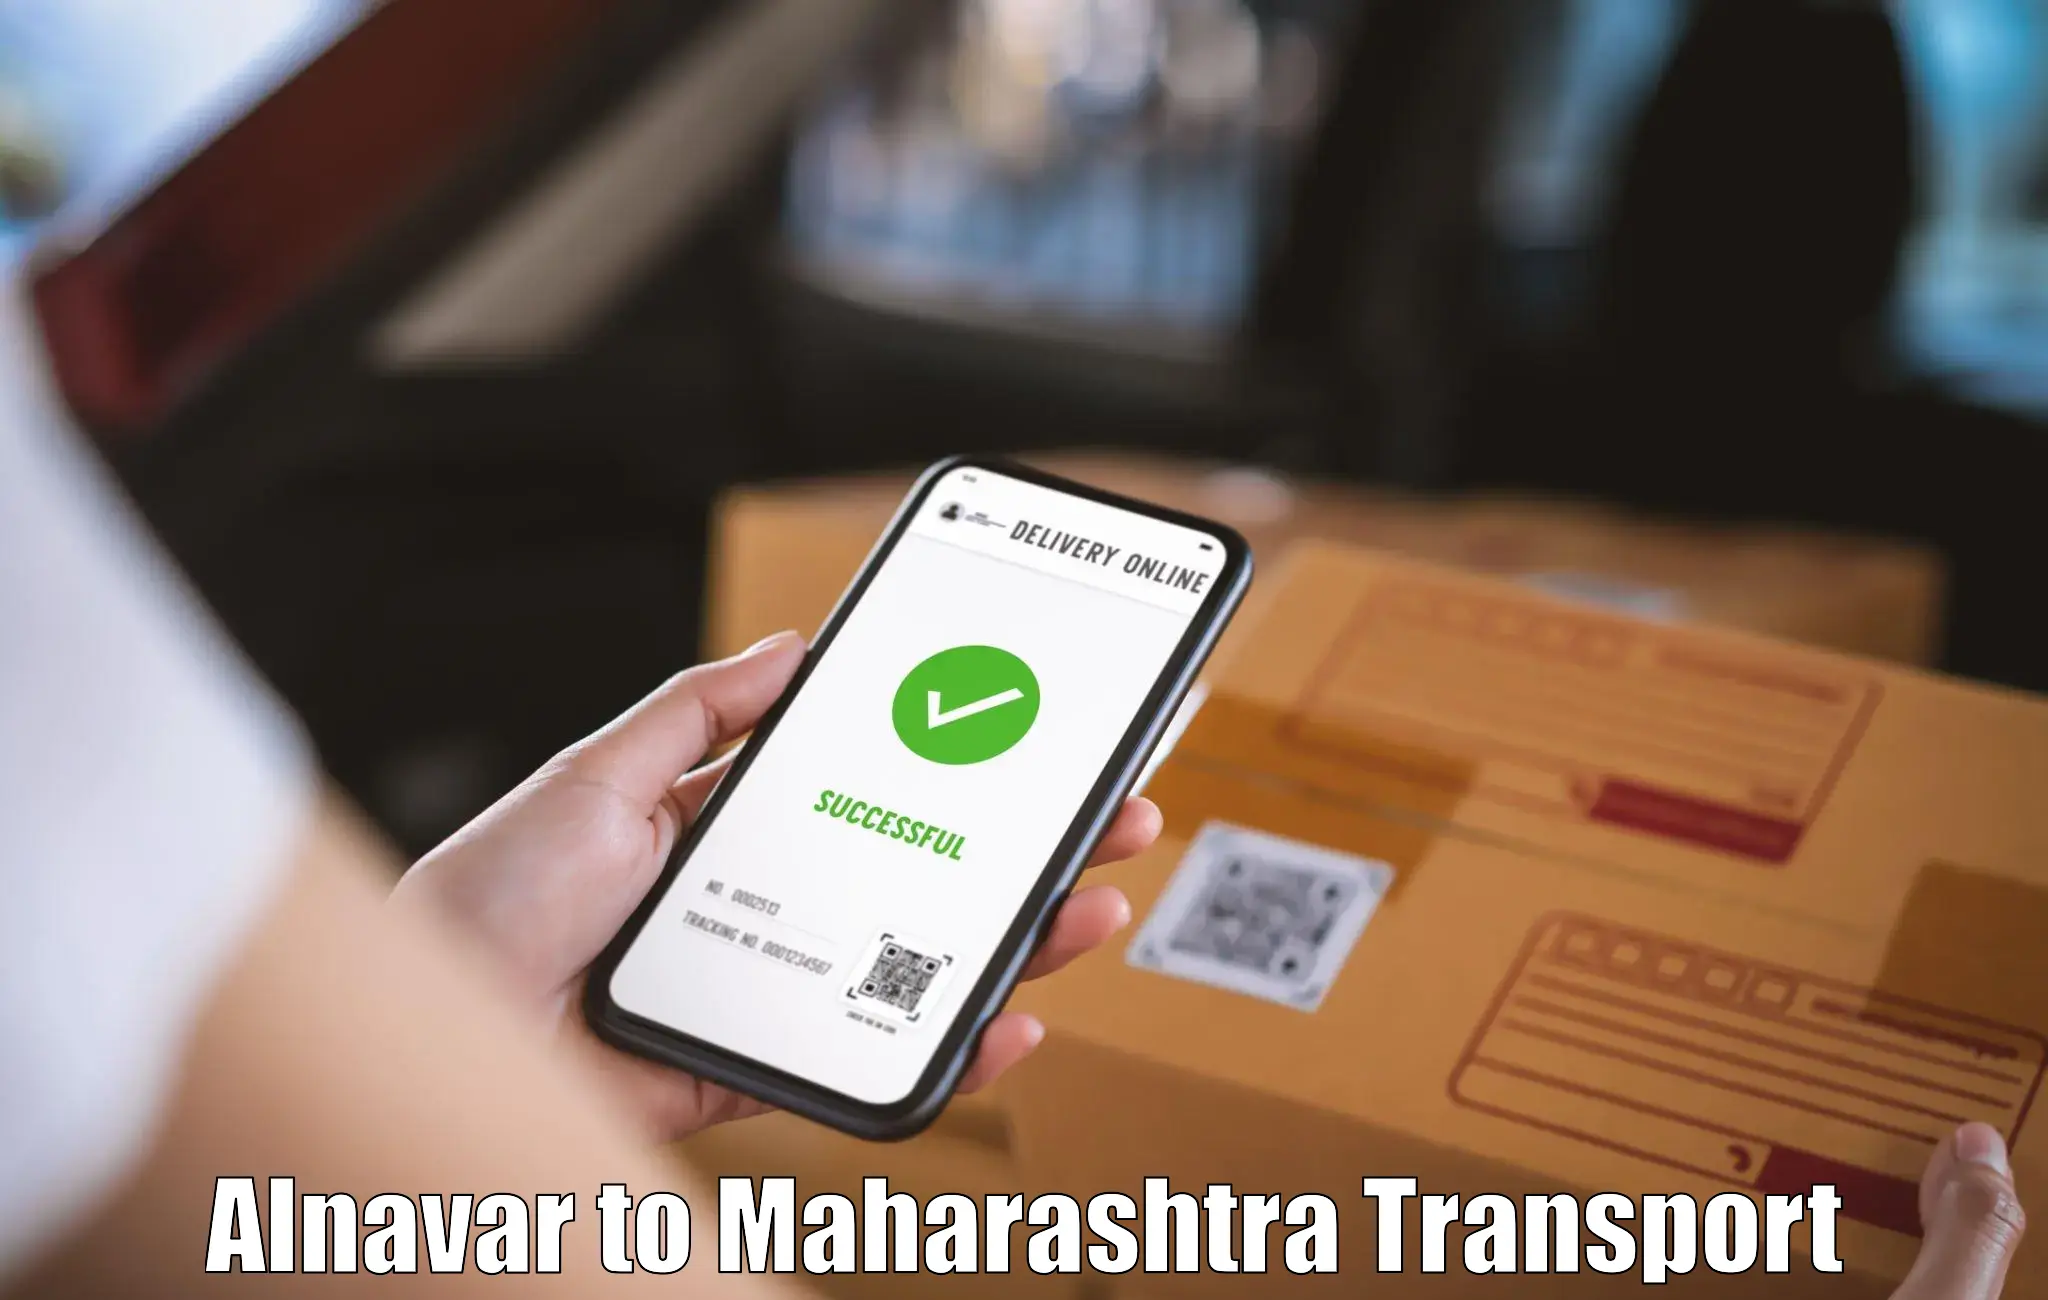 Pick up transport service Alnavar to Nashik